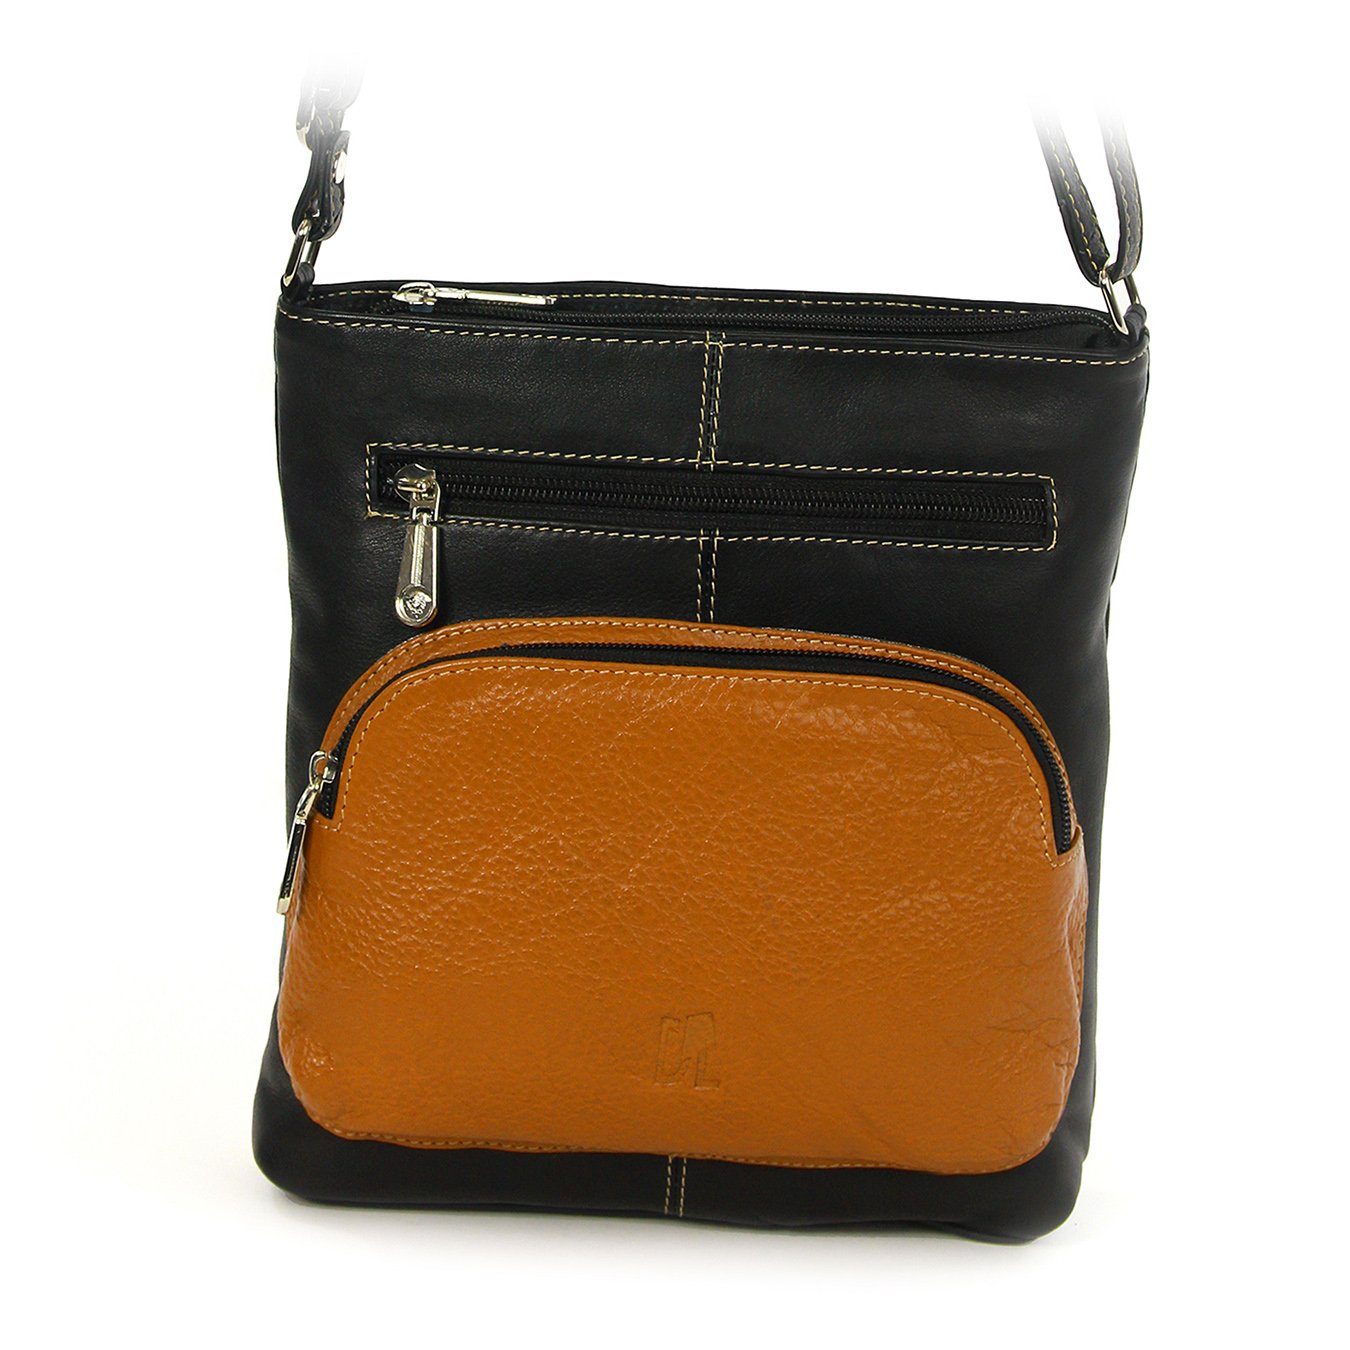 DrachenLeder Handtasche OTZ900X DrachenLeder schwarz-braun schwarz, Handtasche Tasche, Echtleder braun Damen Damen (Handtasche)